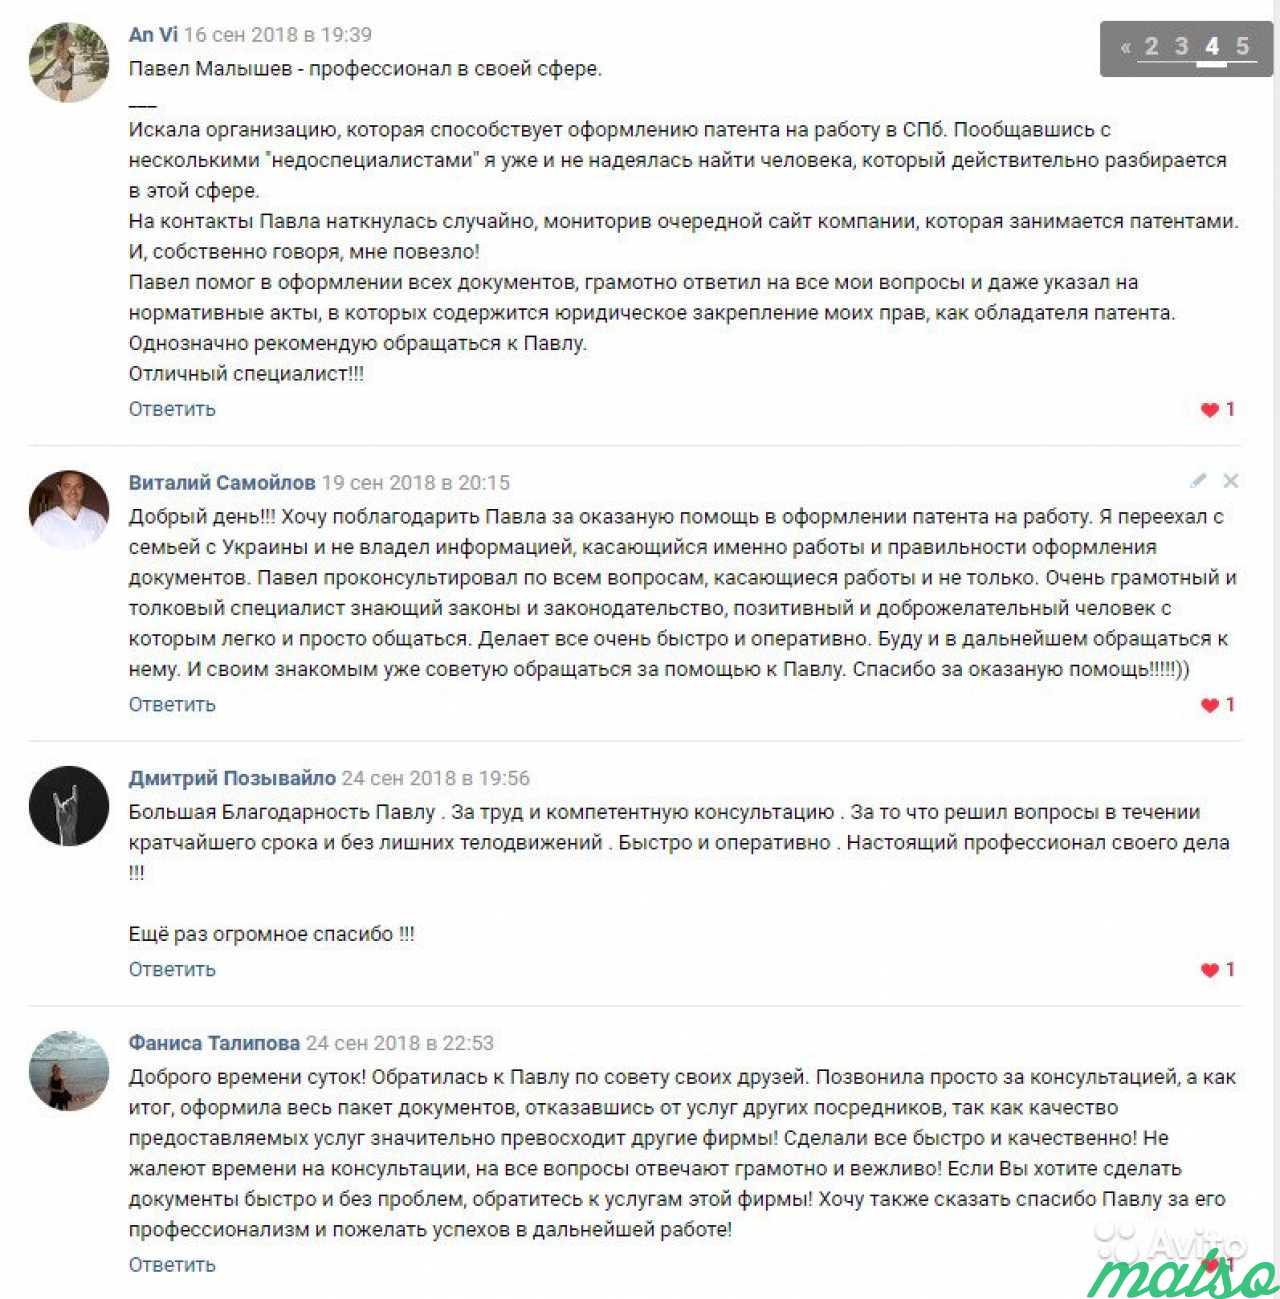 Патент на работу в спб. Более 90 отзывов в вк в Санкт-Петербурге. Фото 7